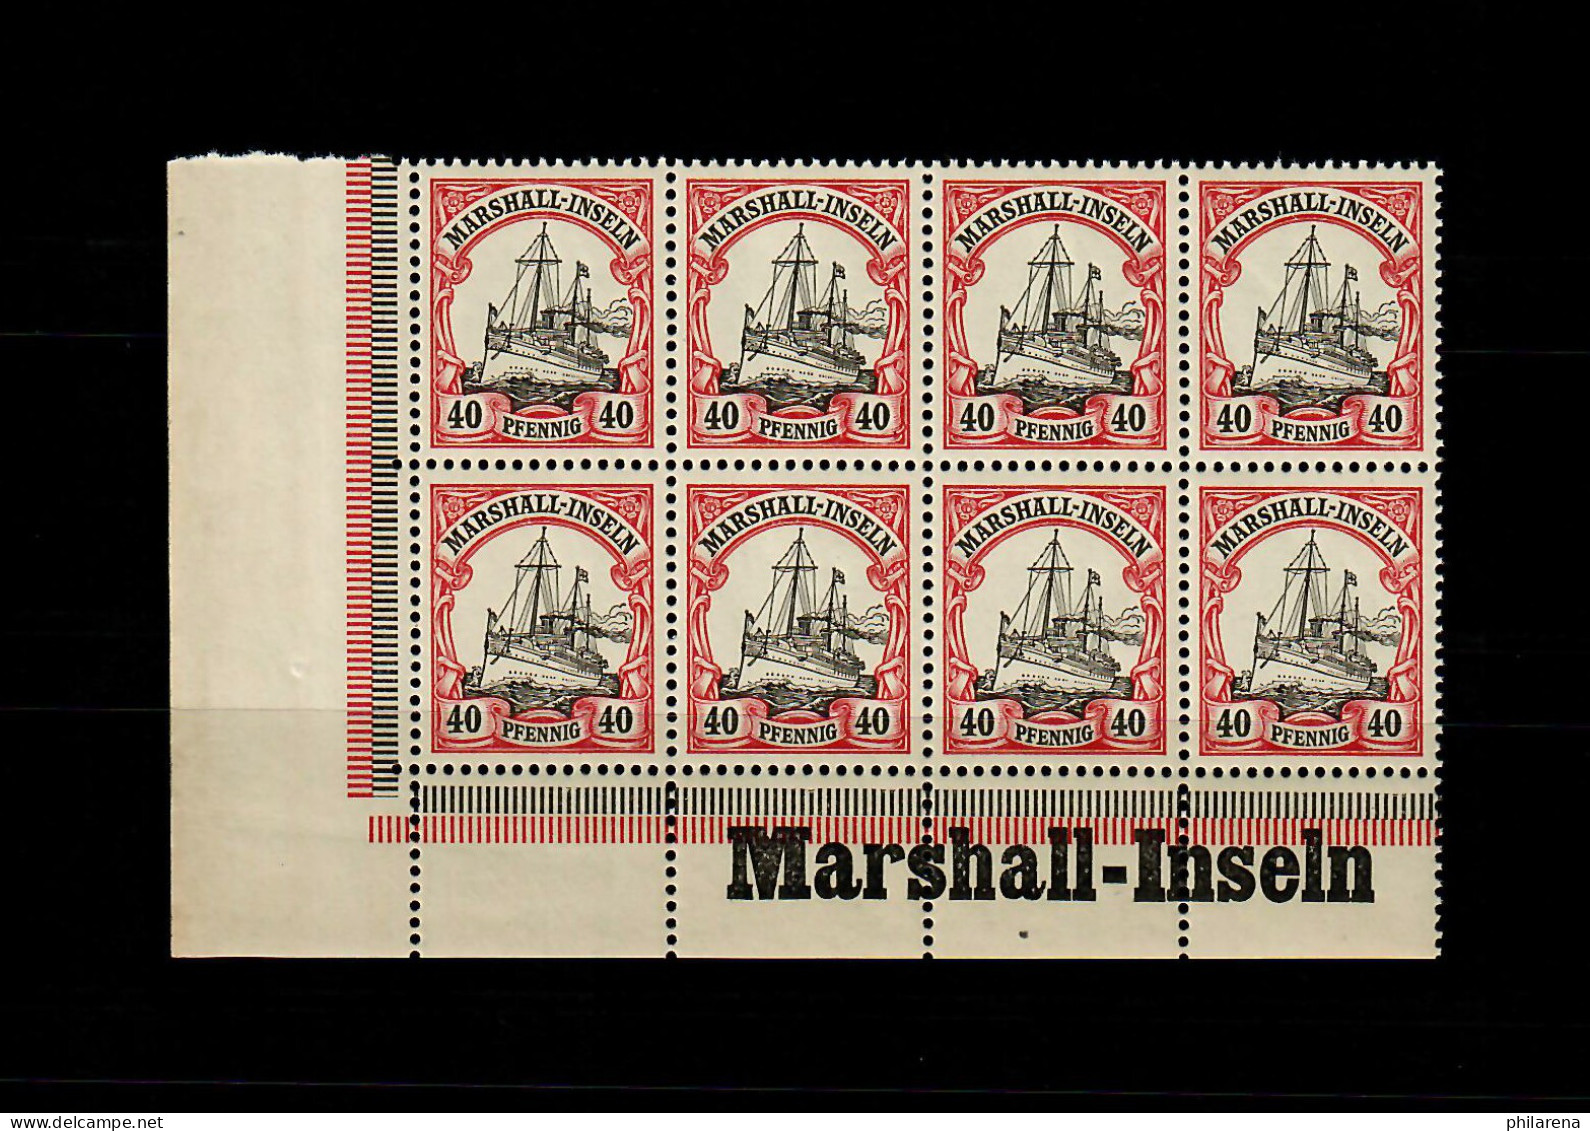 Marschall-Inseln: MiNr. 19, 8er Block Links Inschrift Eckrand, Postfrisch ** - Marshall